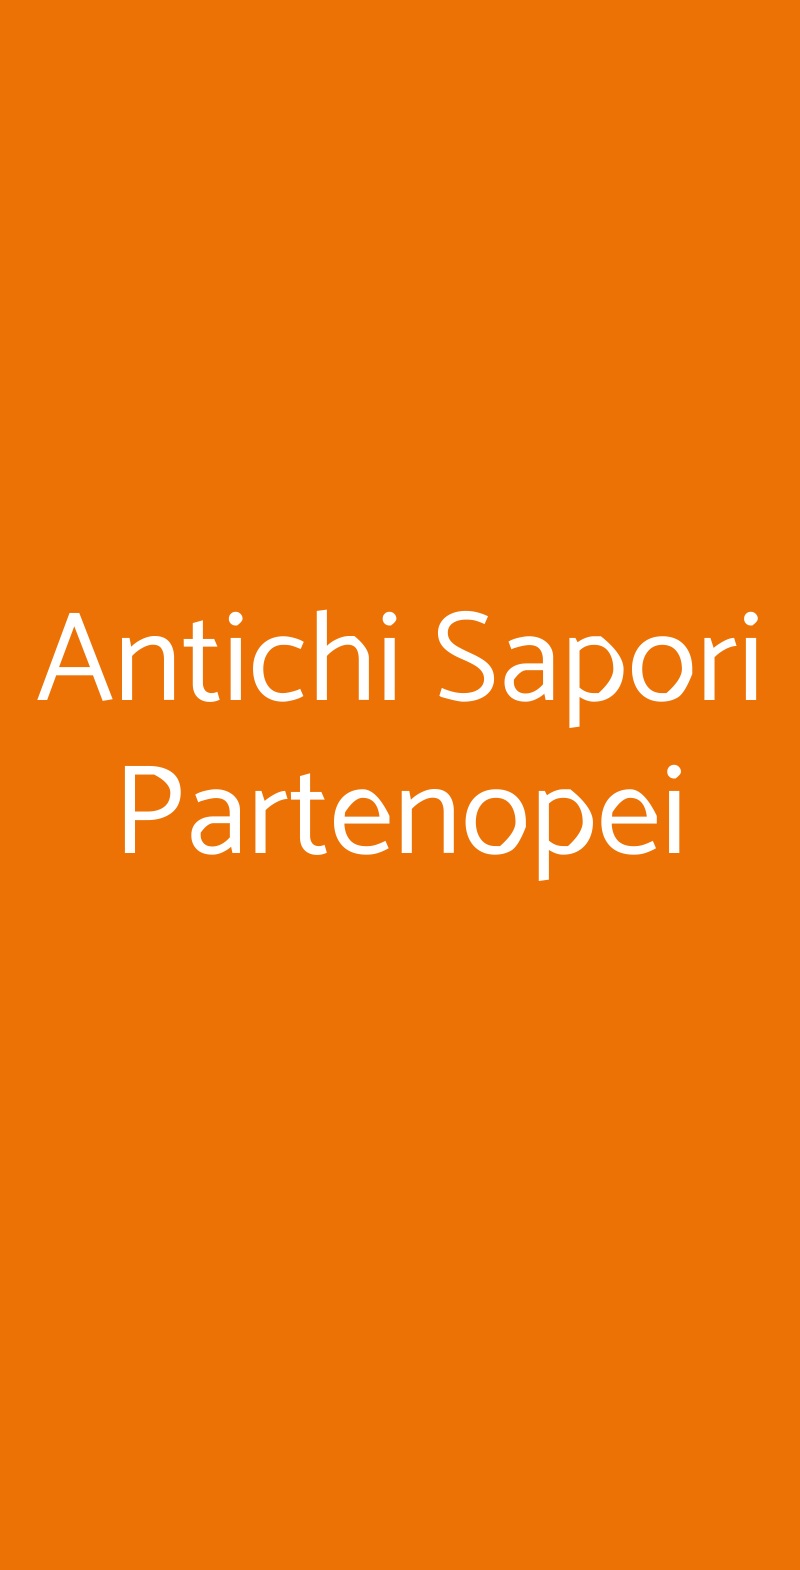 Antichi Sapori Partenopei Napoli menù 1 pagina